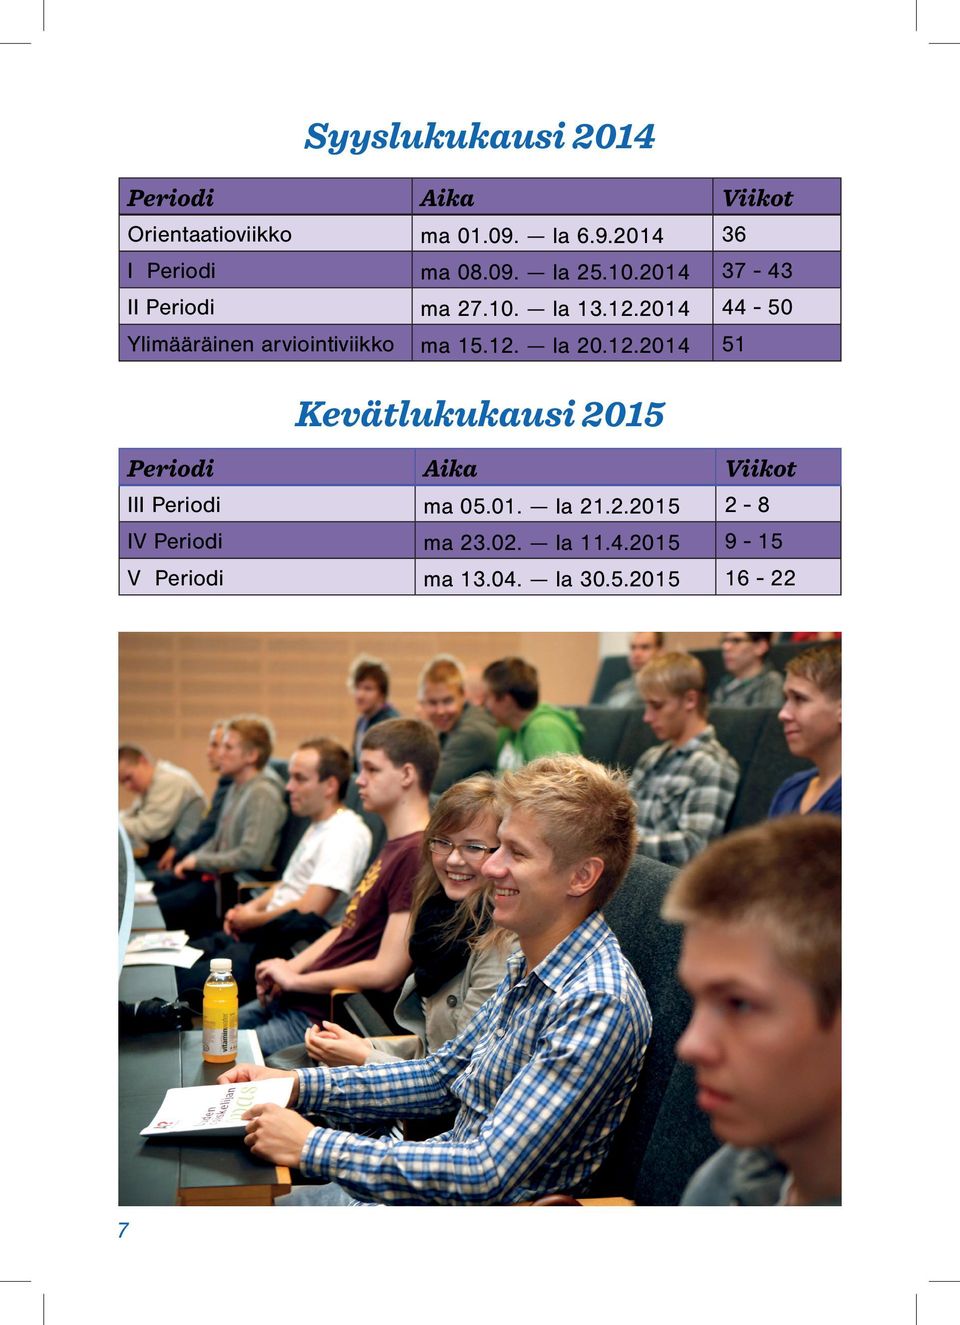 2014 44-50 Ylimääräinen arviointiviikko ma 15.12.